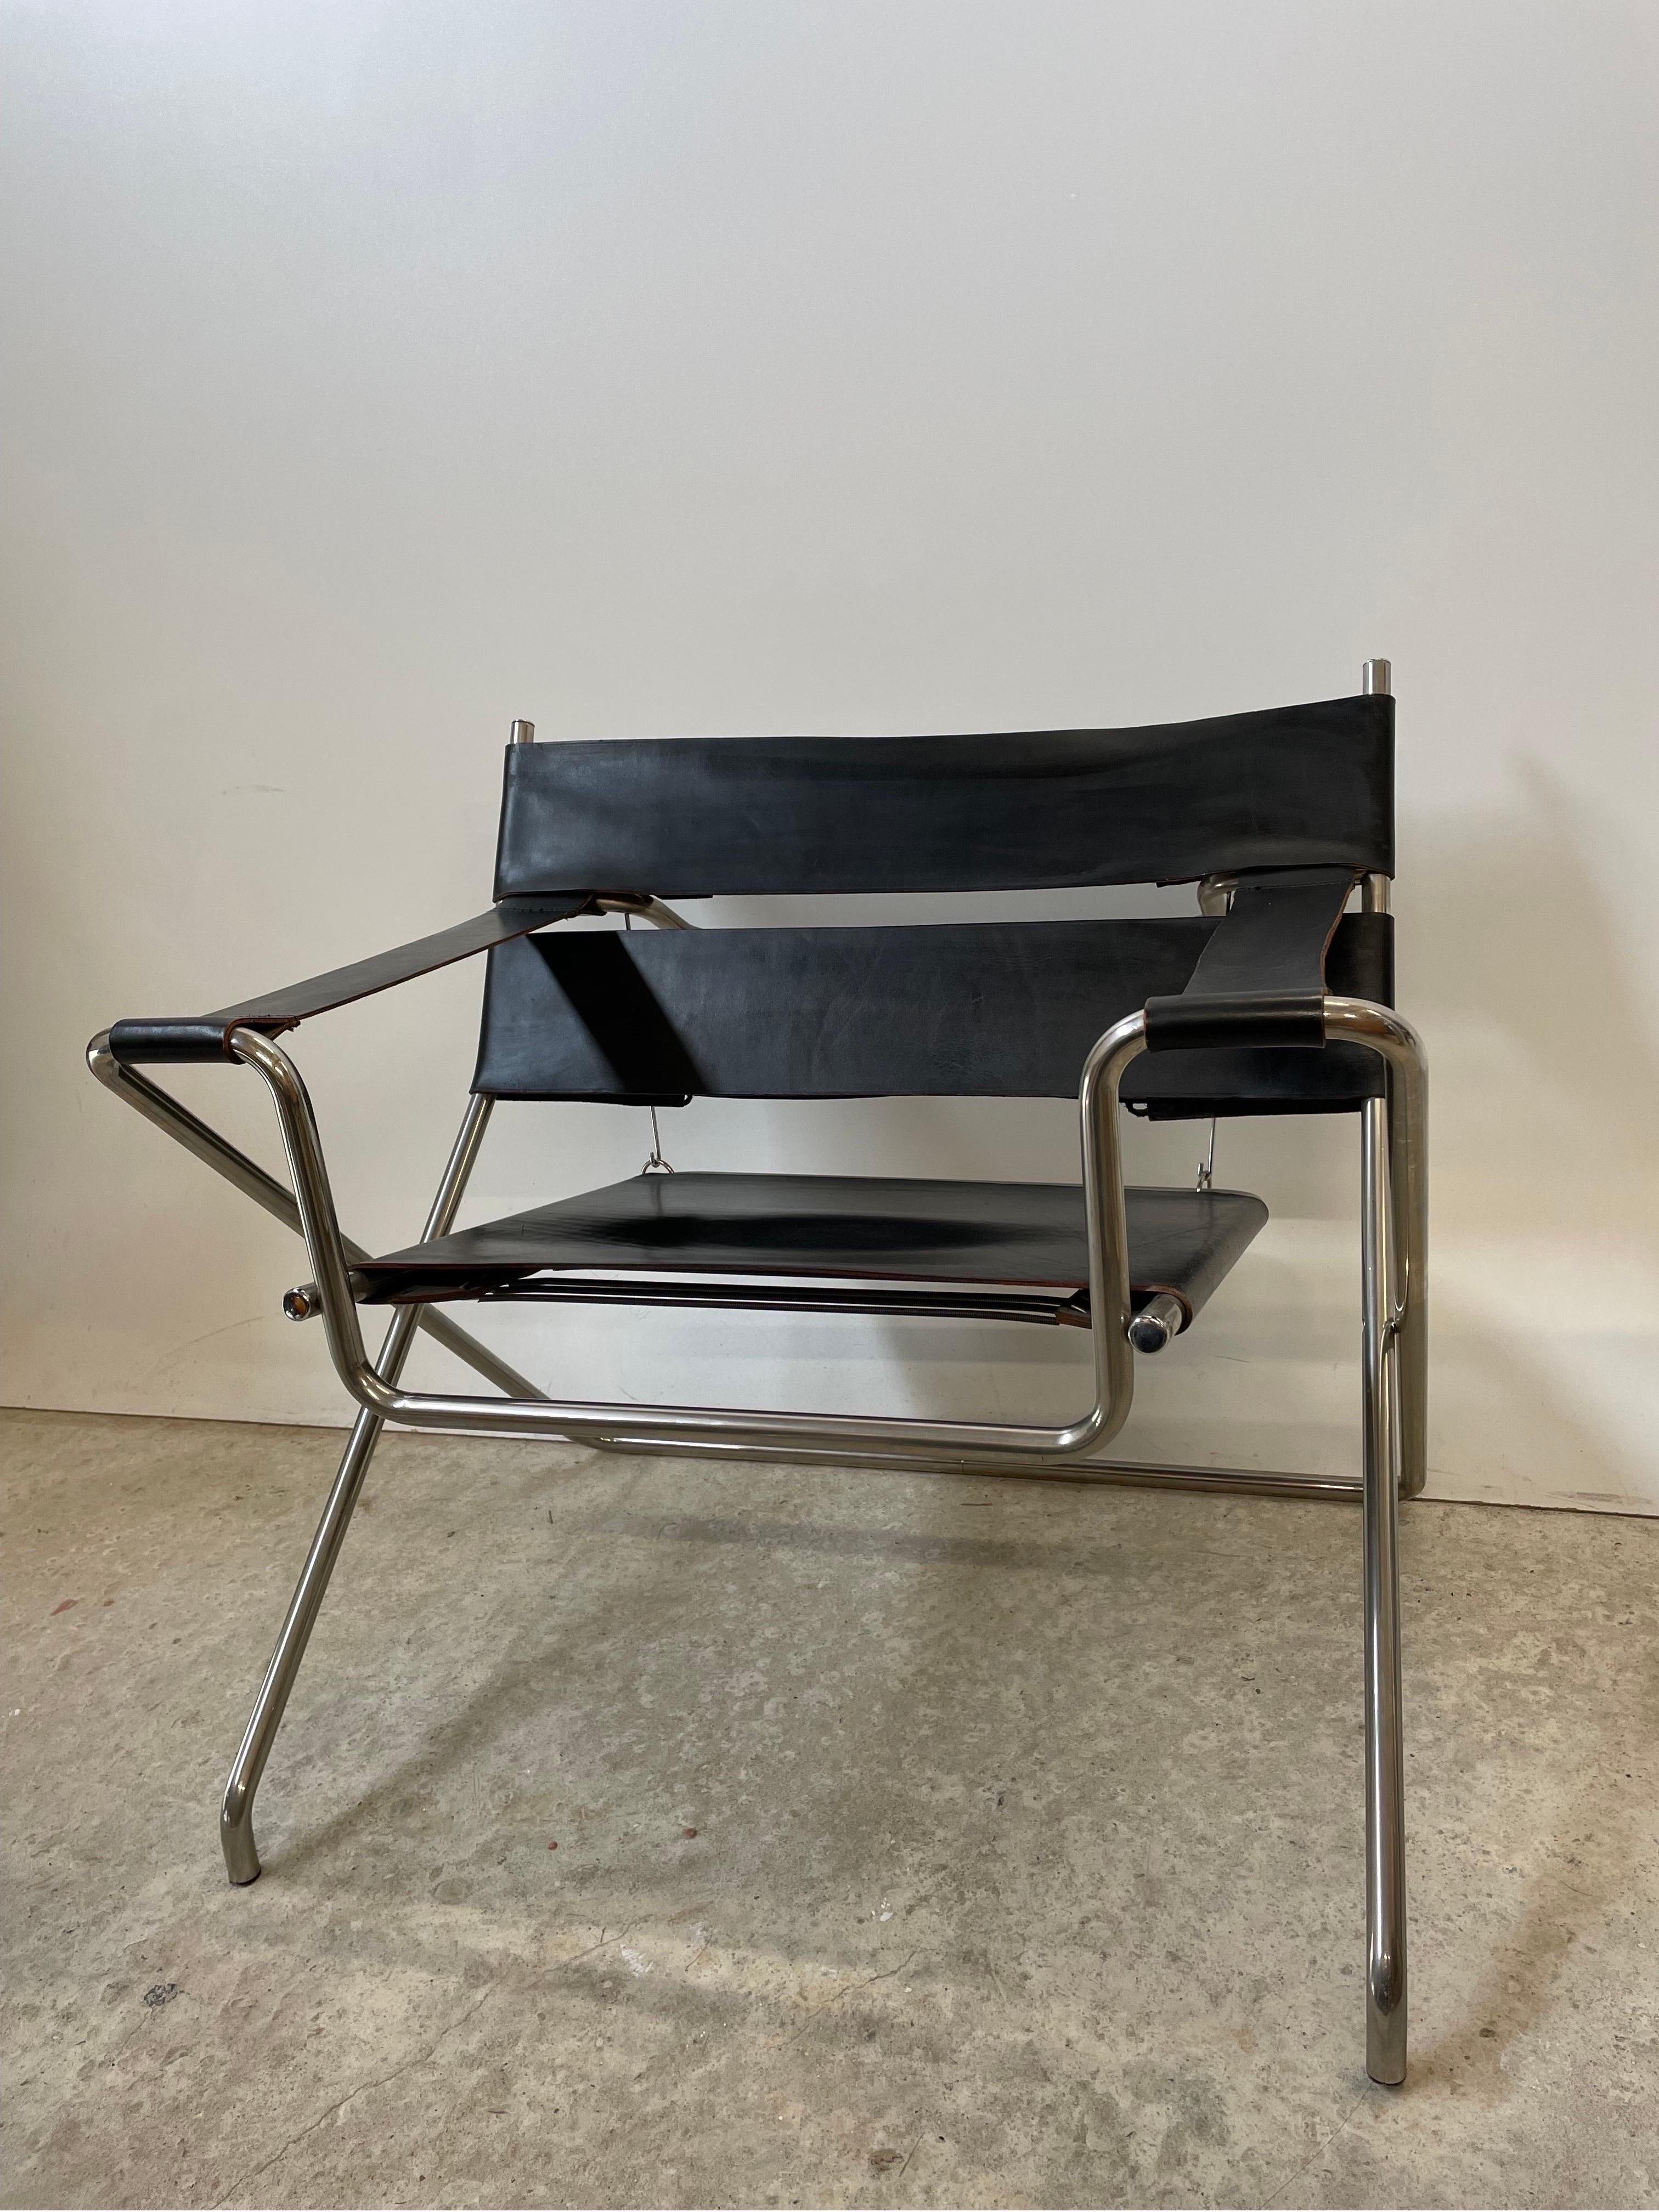 Der D4 Stuhl von Marcel Breuer für Tecta ist nicht zu unrecht einer der bekanntesten Bauhaus Klassiker überhaupt. Und deshalb erfüllt es mich mit Stolz euch diesen zu 100% originalen Sessel vorzustellen. 

Dieses zeitlose Meisterwerk überzeugt mit